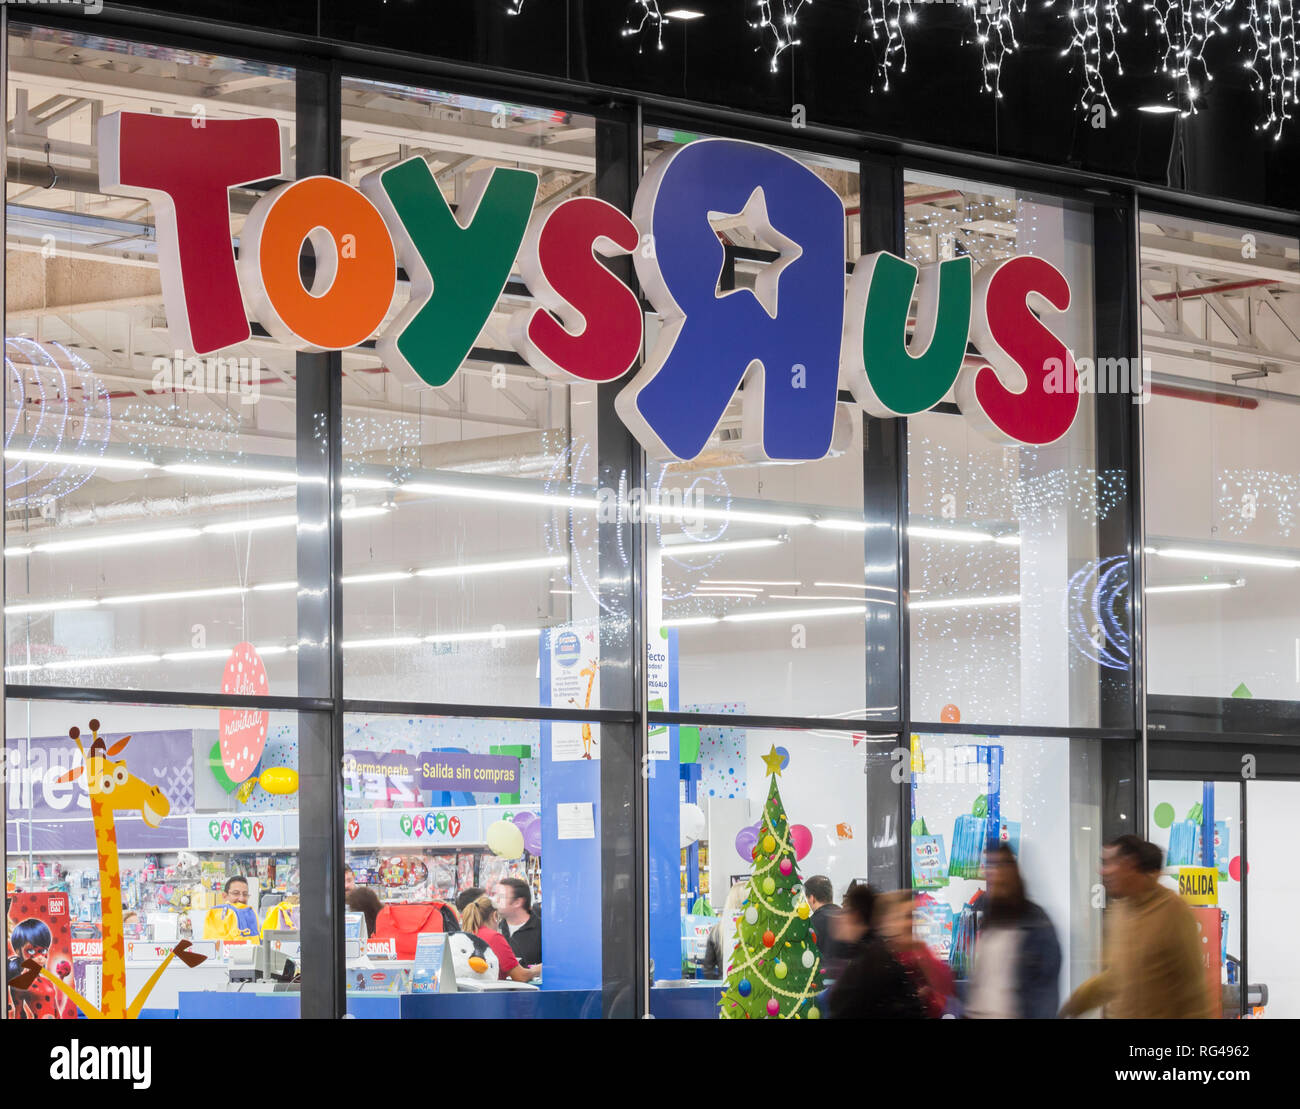 Tienda de Toys R Us en España Fotografía de stock - Alamy